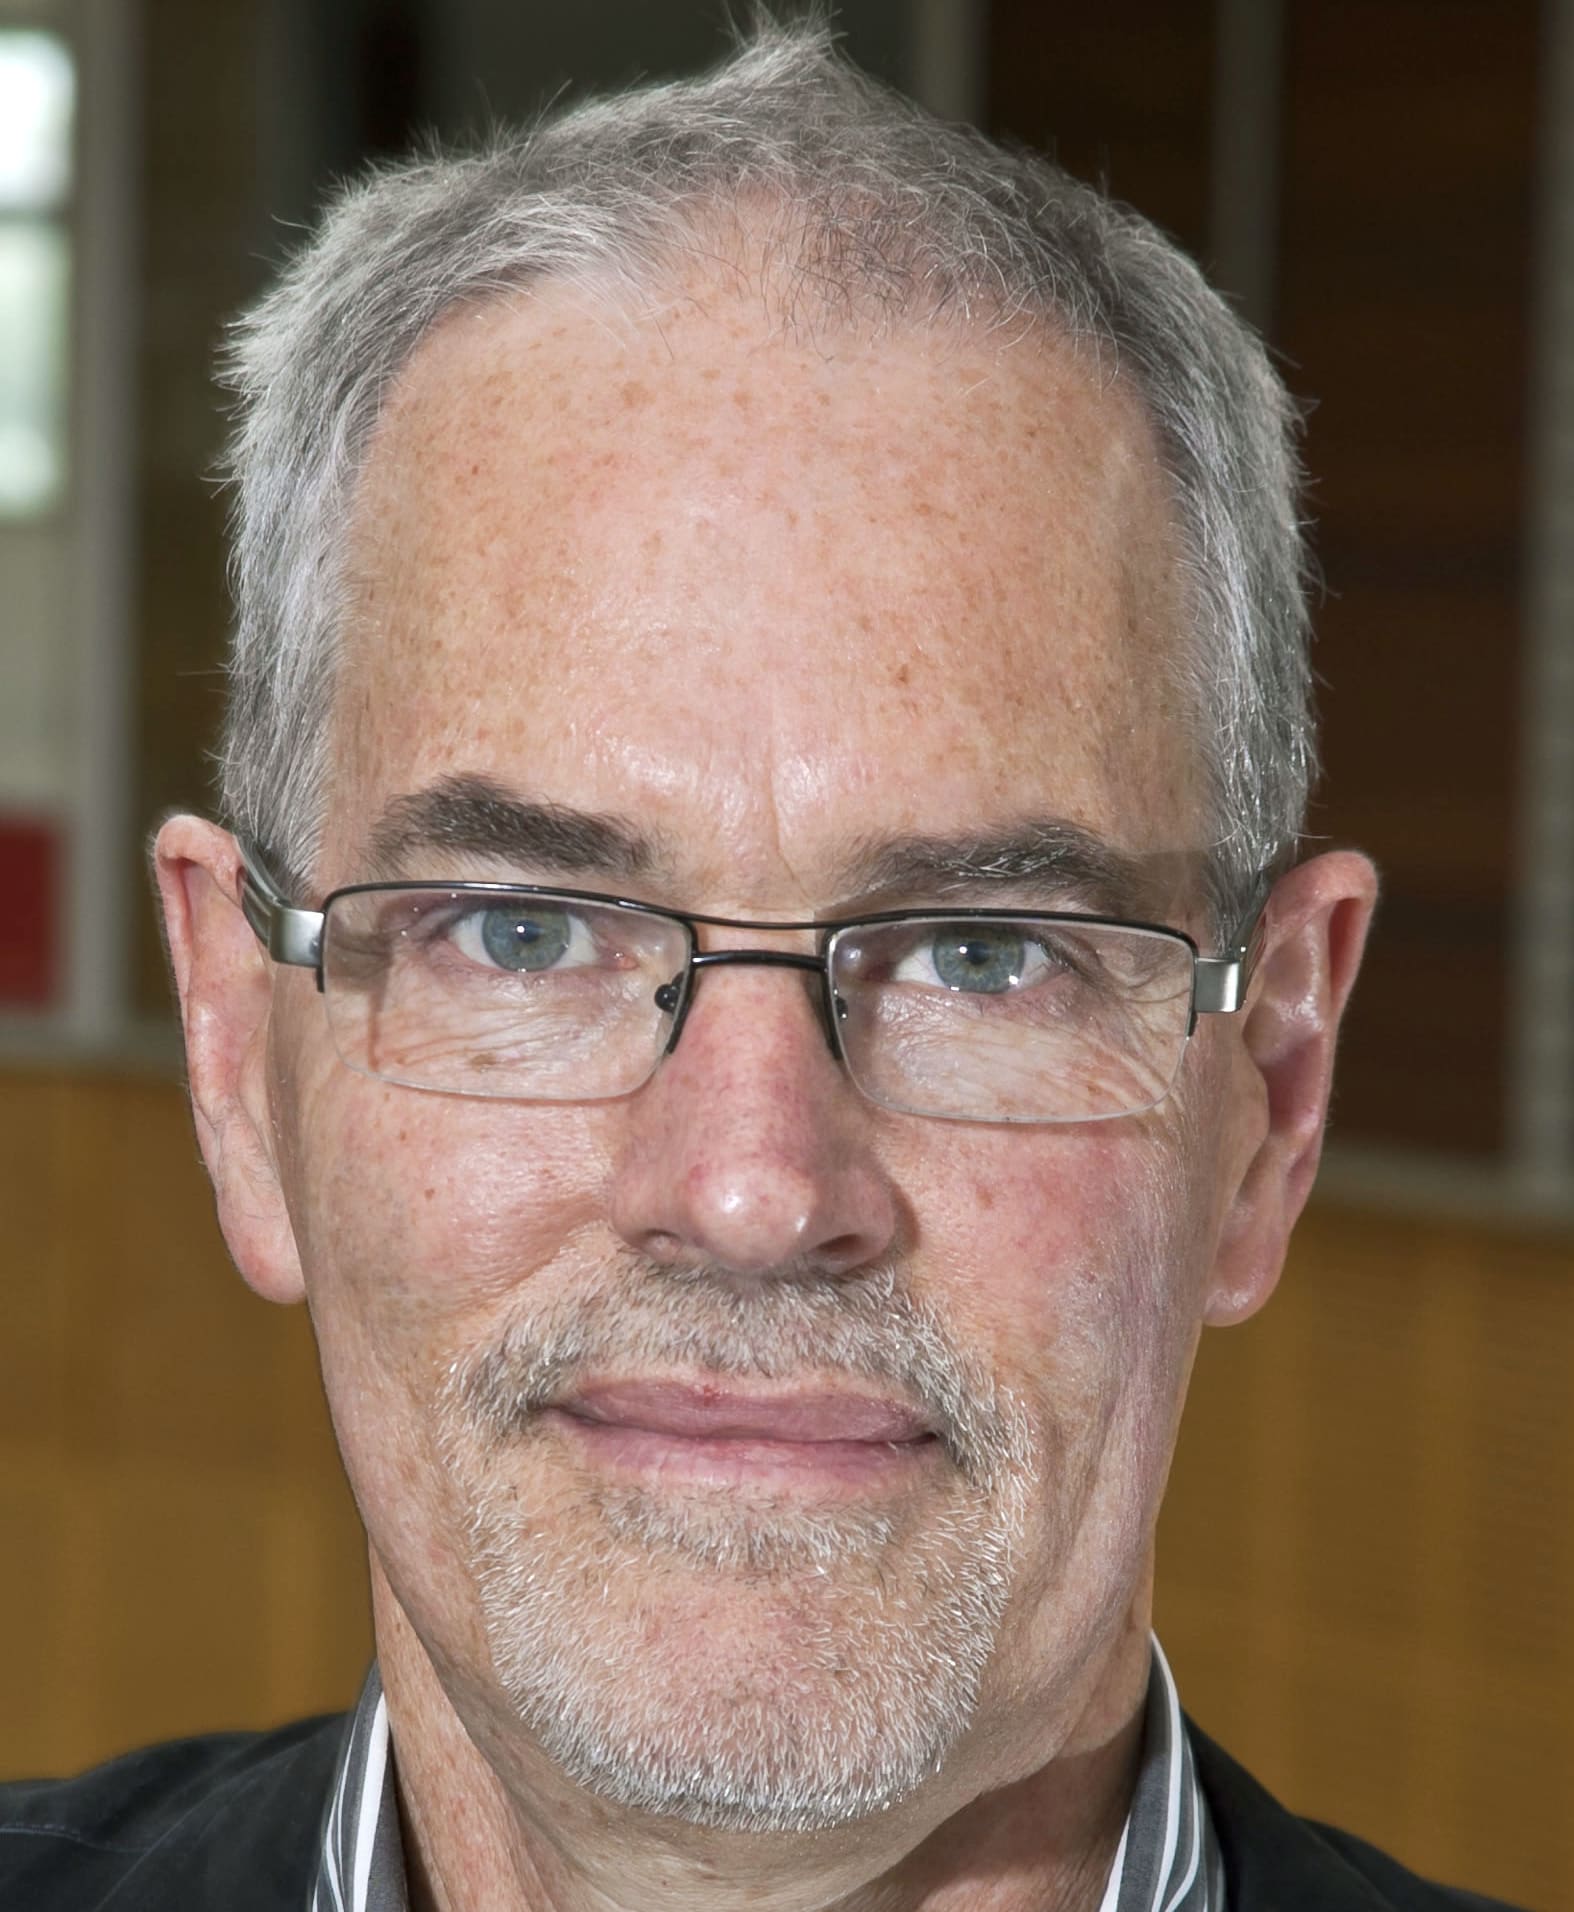 Professor Chris Bullen of The University of Auckland